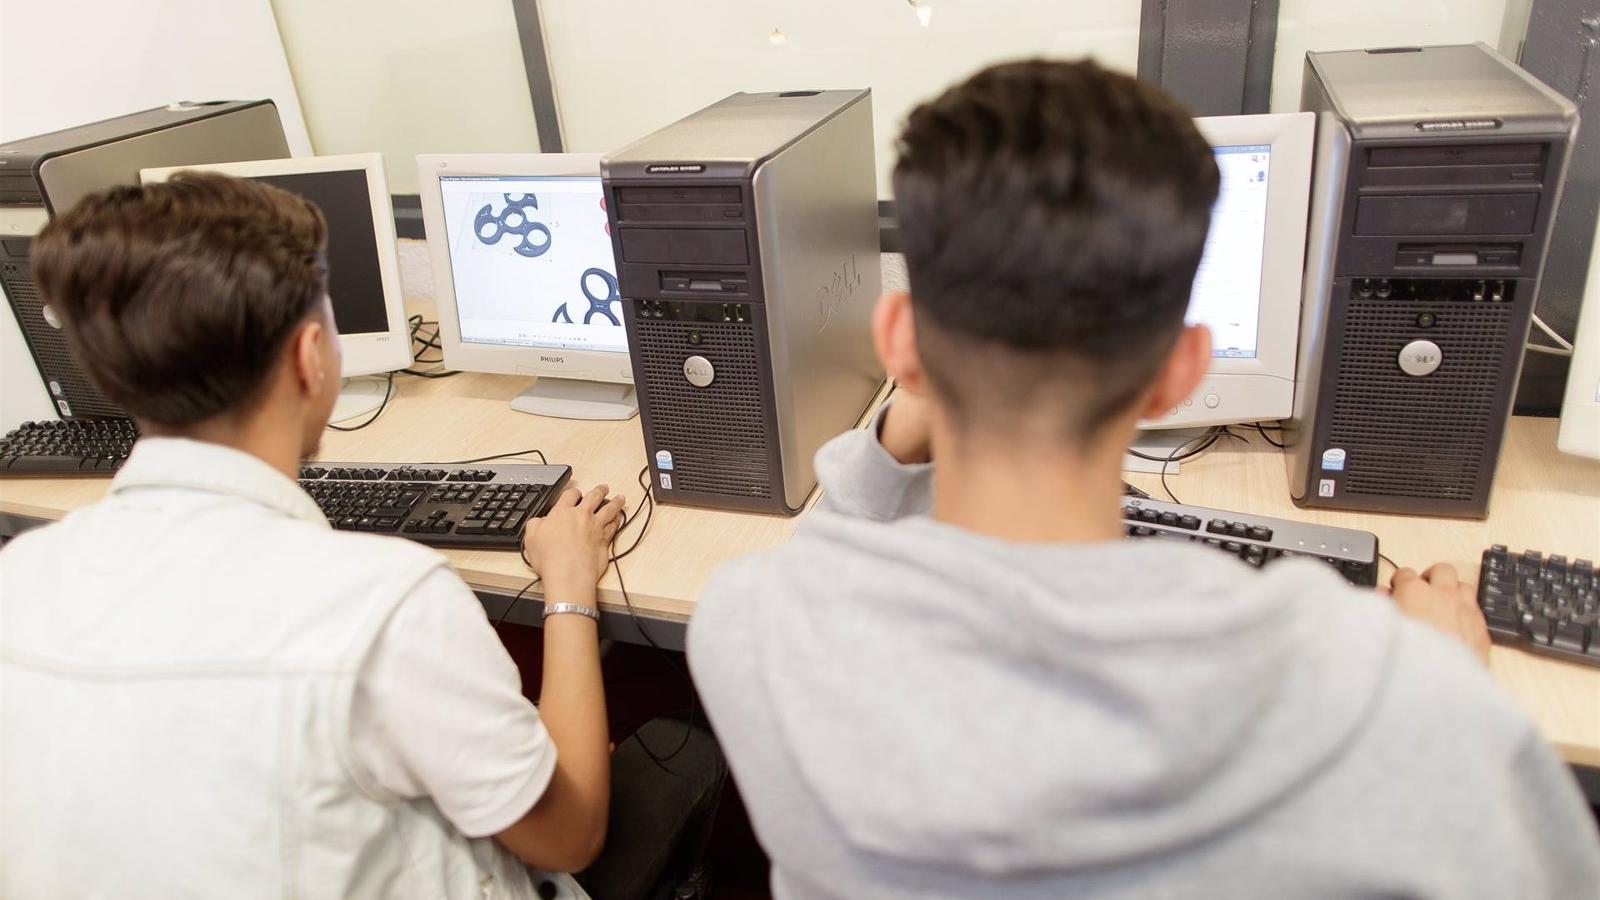 3.600 alumnos de especialidades informáticas inician curso sin profesores según CCOO